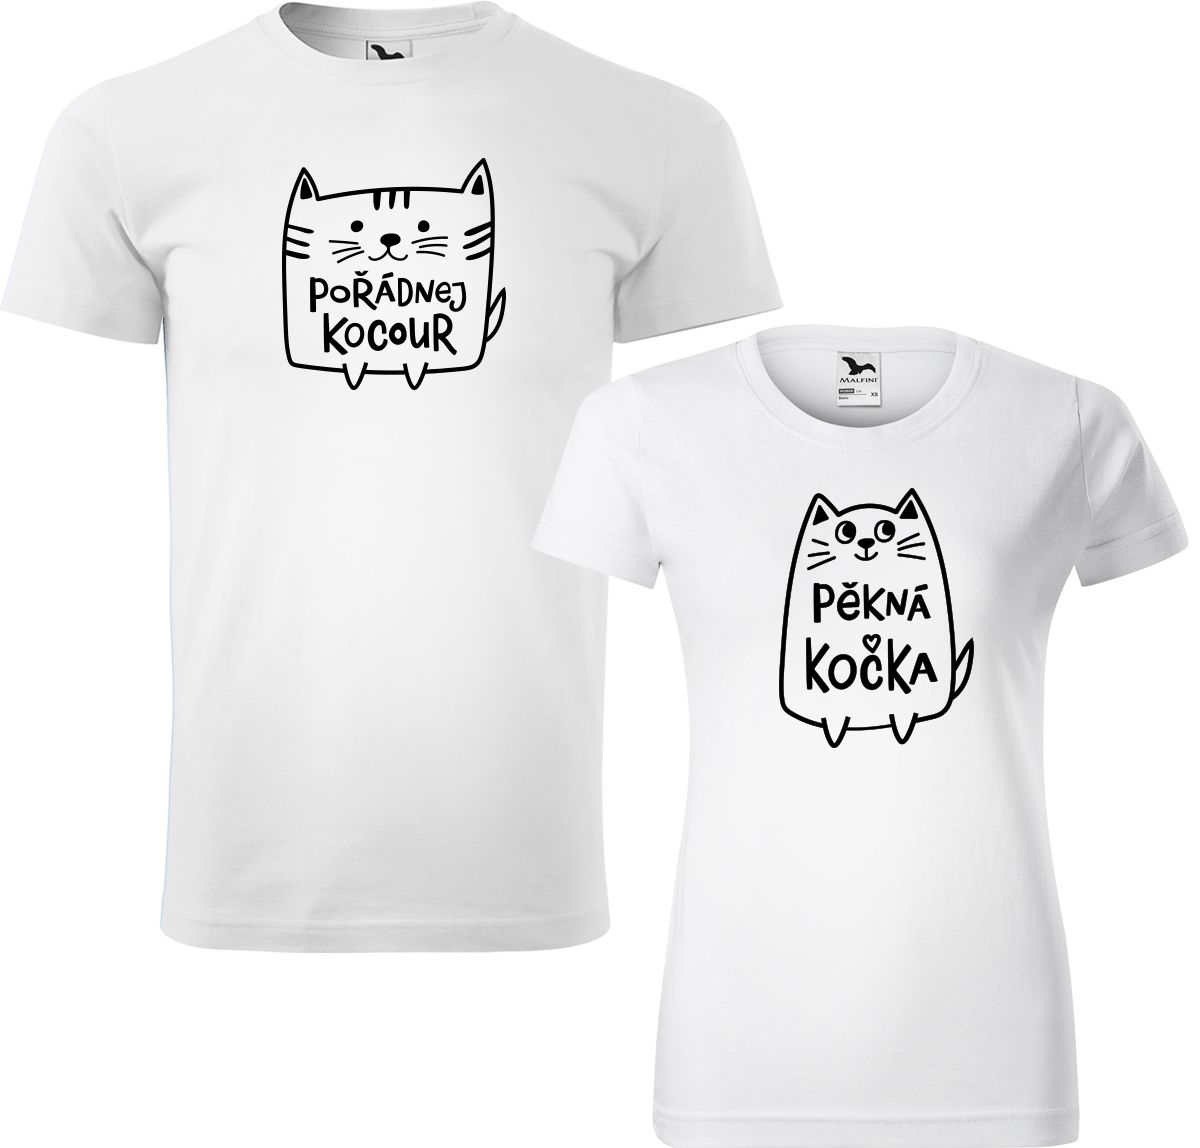 Trička pro páry - Pořádnej kocour a pěkná kočka Barva: Bílá (00), Velikost dámské tričko: S, Velikost pánské tričko: S